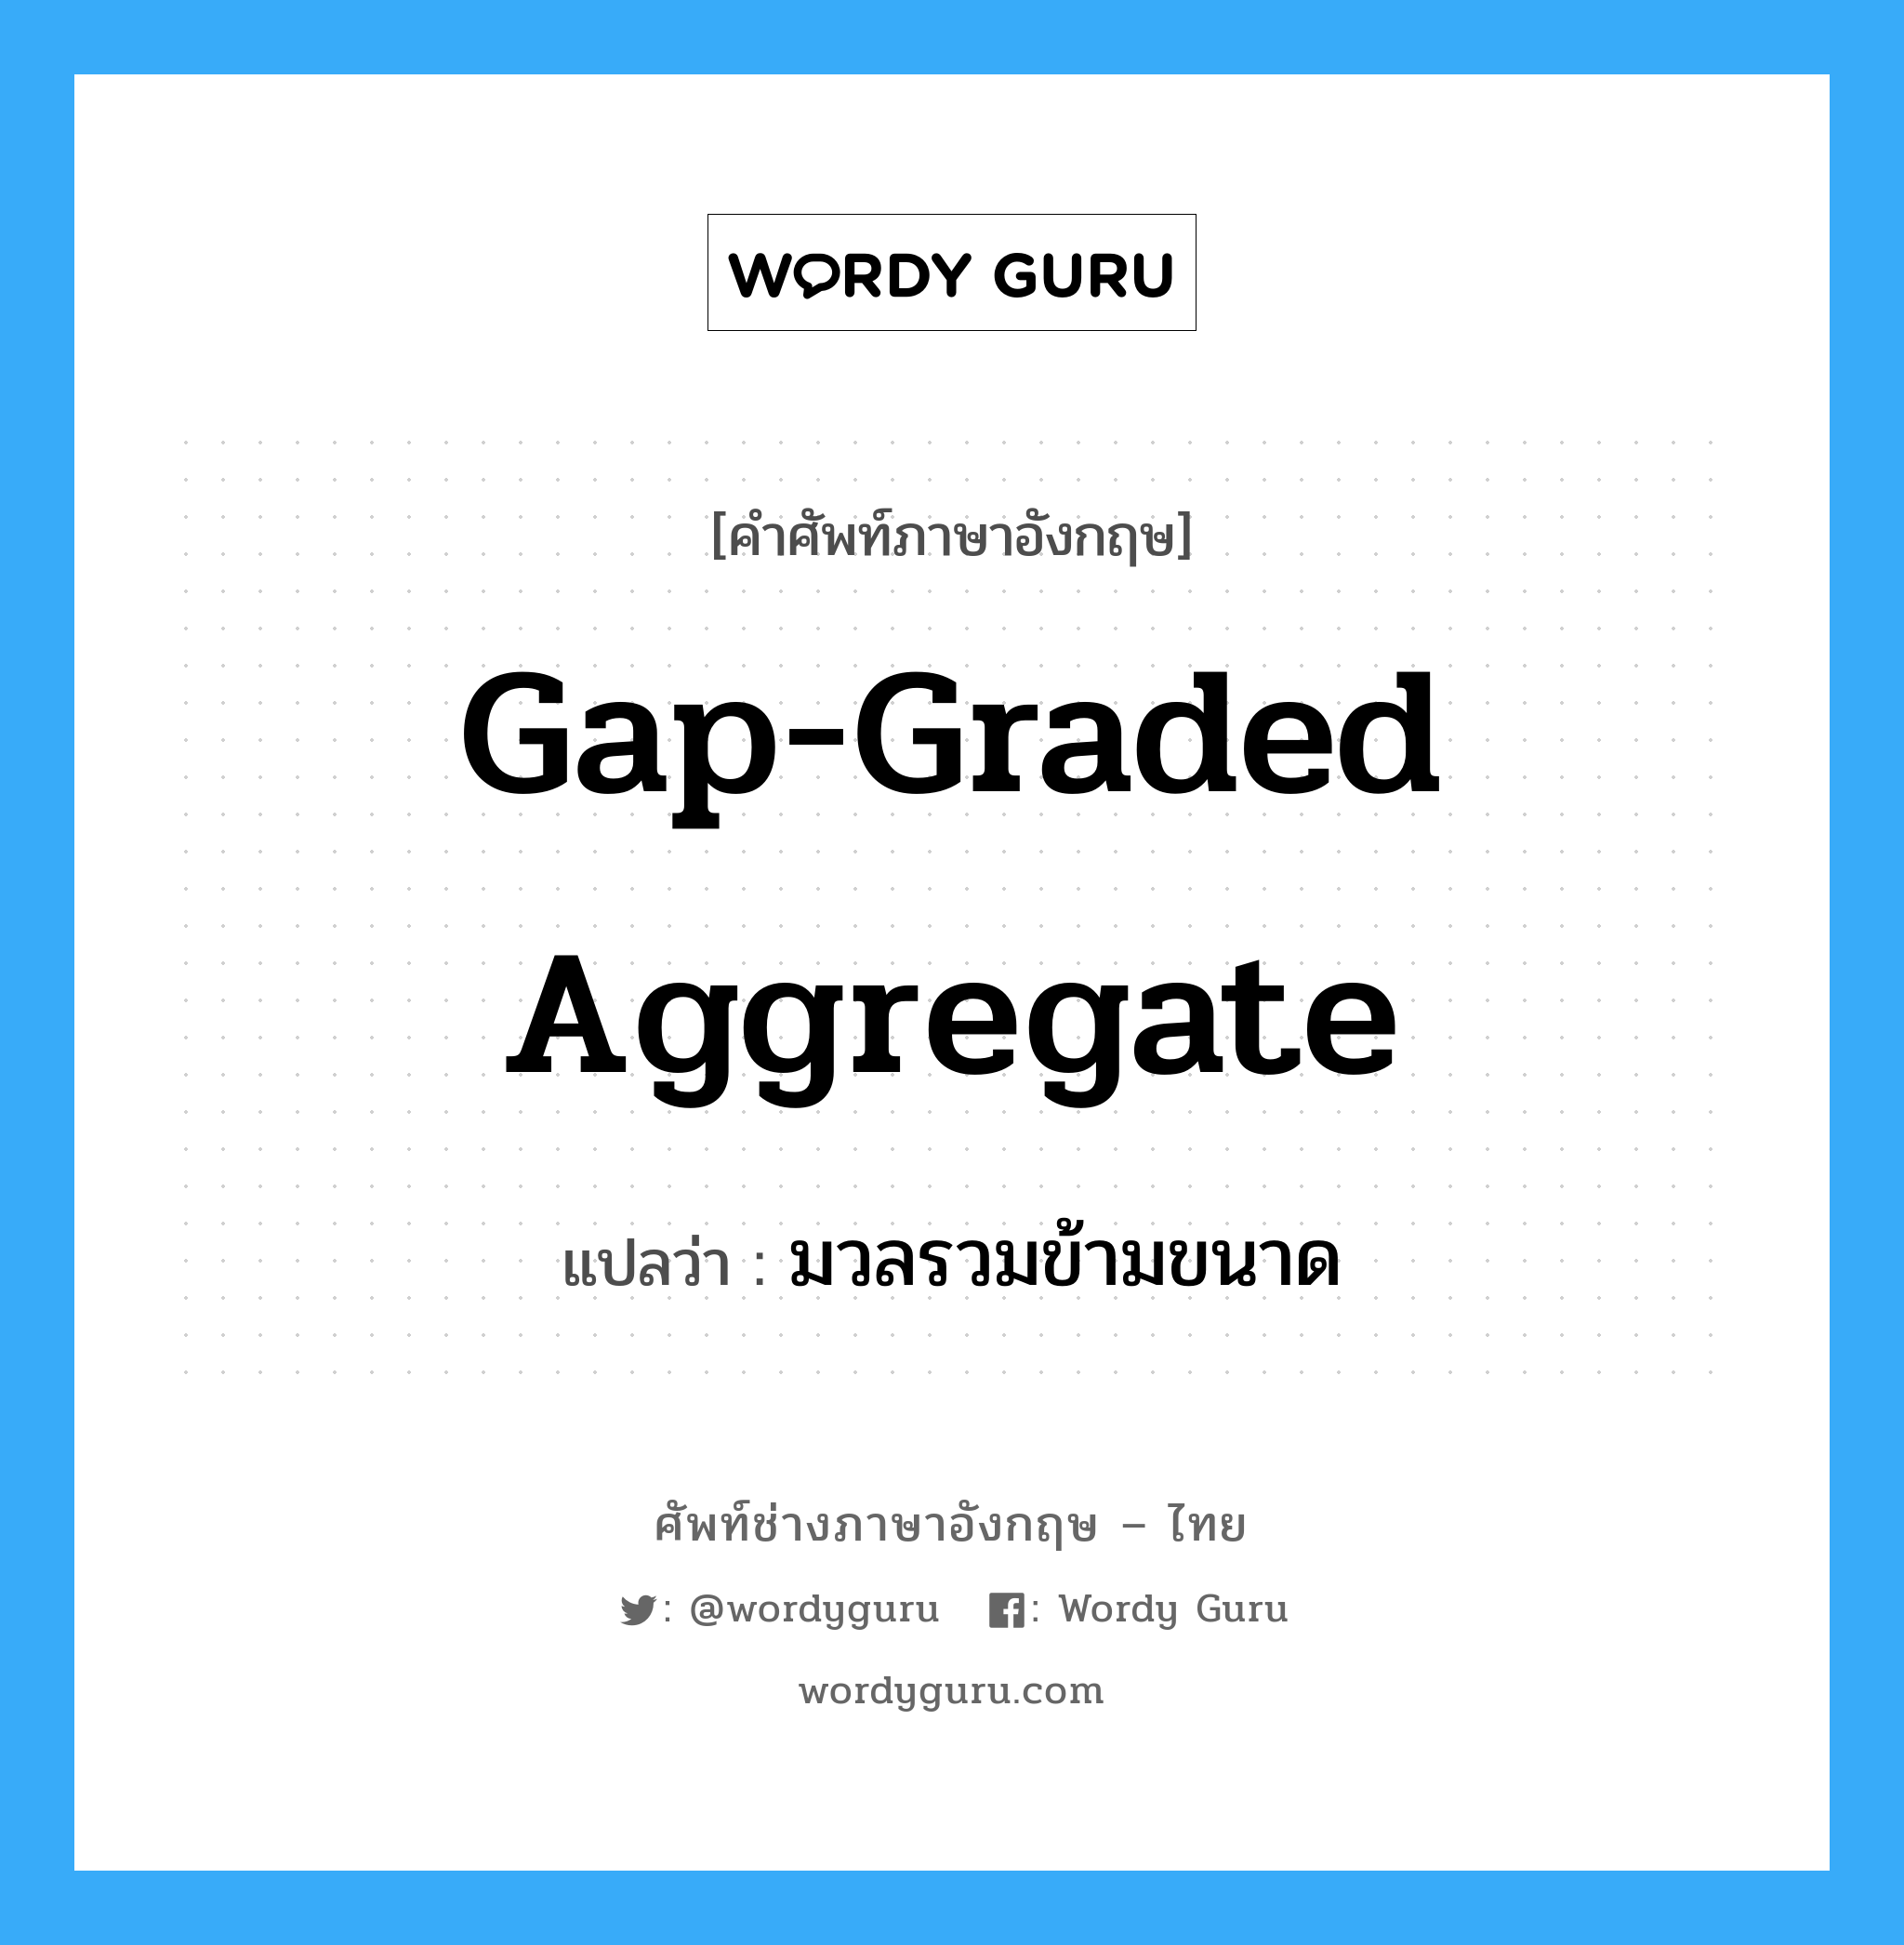 มวลรวมข้ามขนาด ภาษาอังกฤษ?, คำศัพท์ช่างภาษาอังกฤษ - ไทย มวลรวมข้ามขนาด คำศัพท์ภาษาอังกฤษ มวลรวมข้ามขนาด แปลว่า gap-graded aggregate